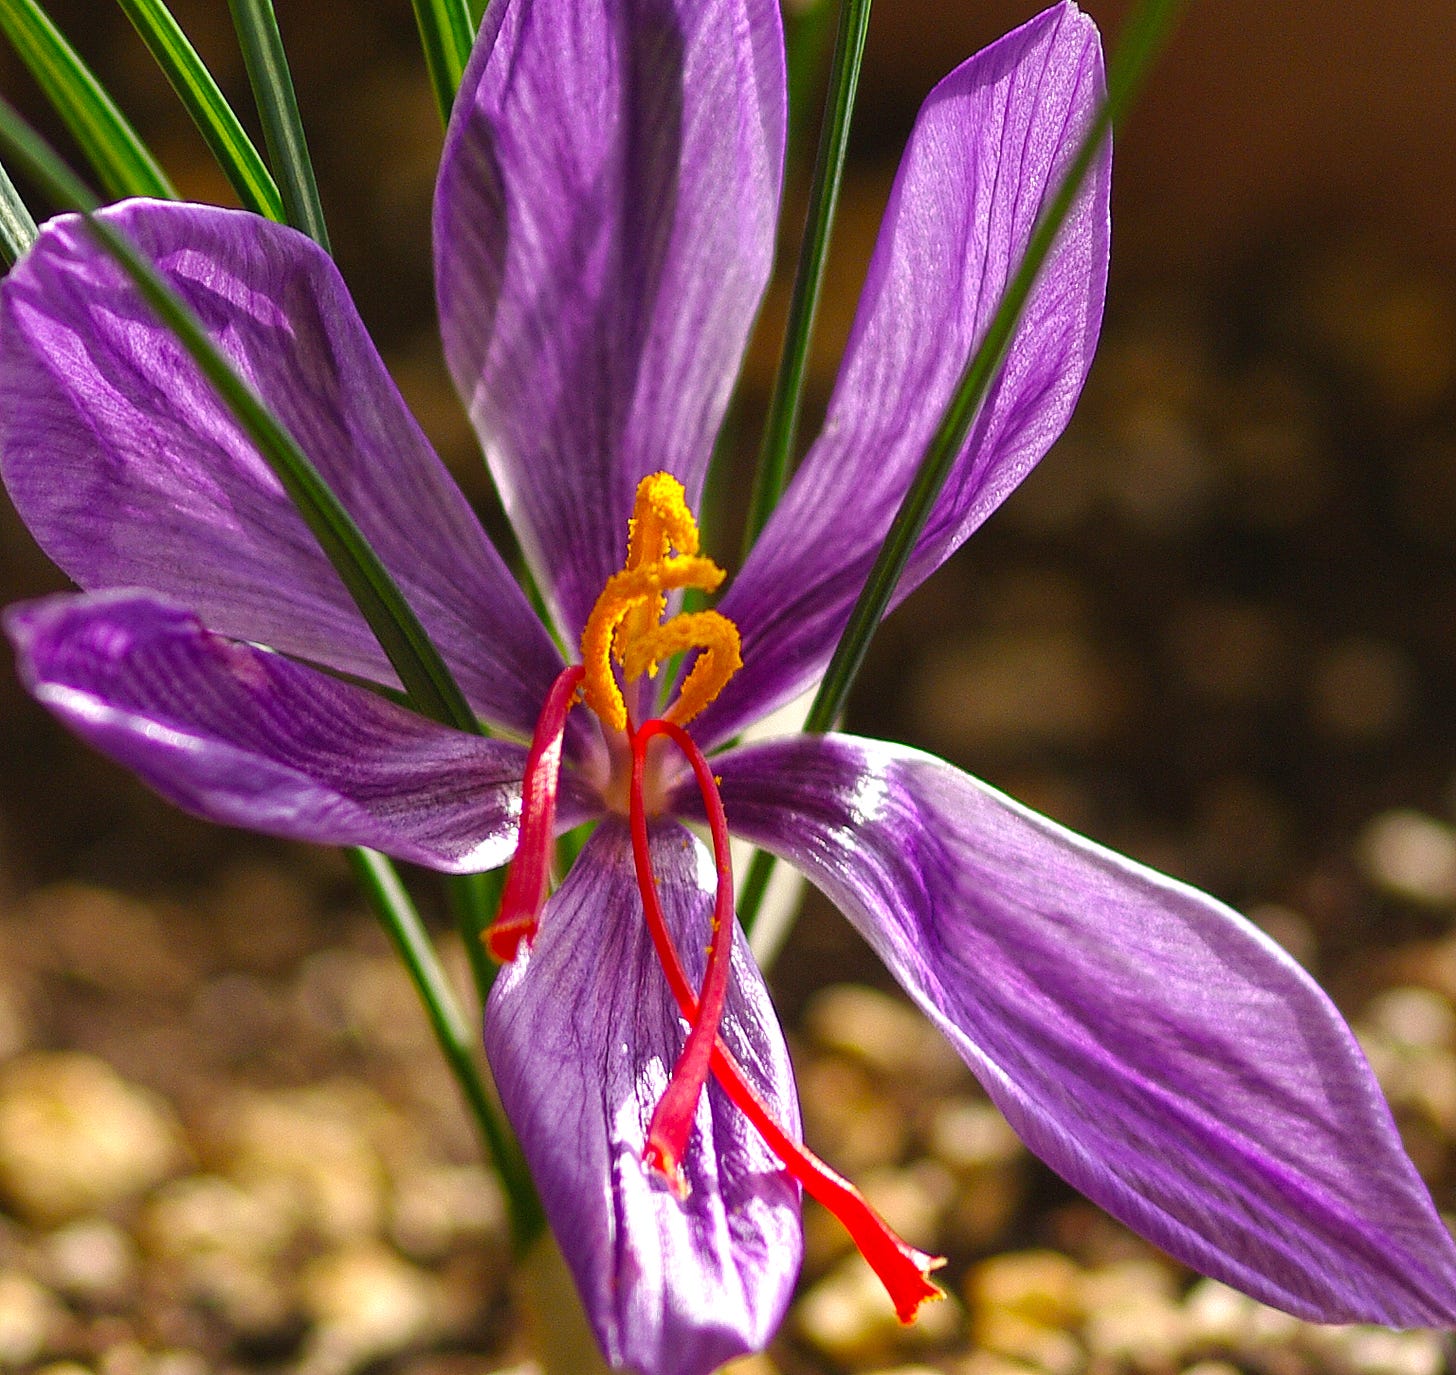 File:Crocus sativus - Saffron crocus - Safran 02.JPG - Wikimedia Commons